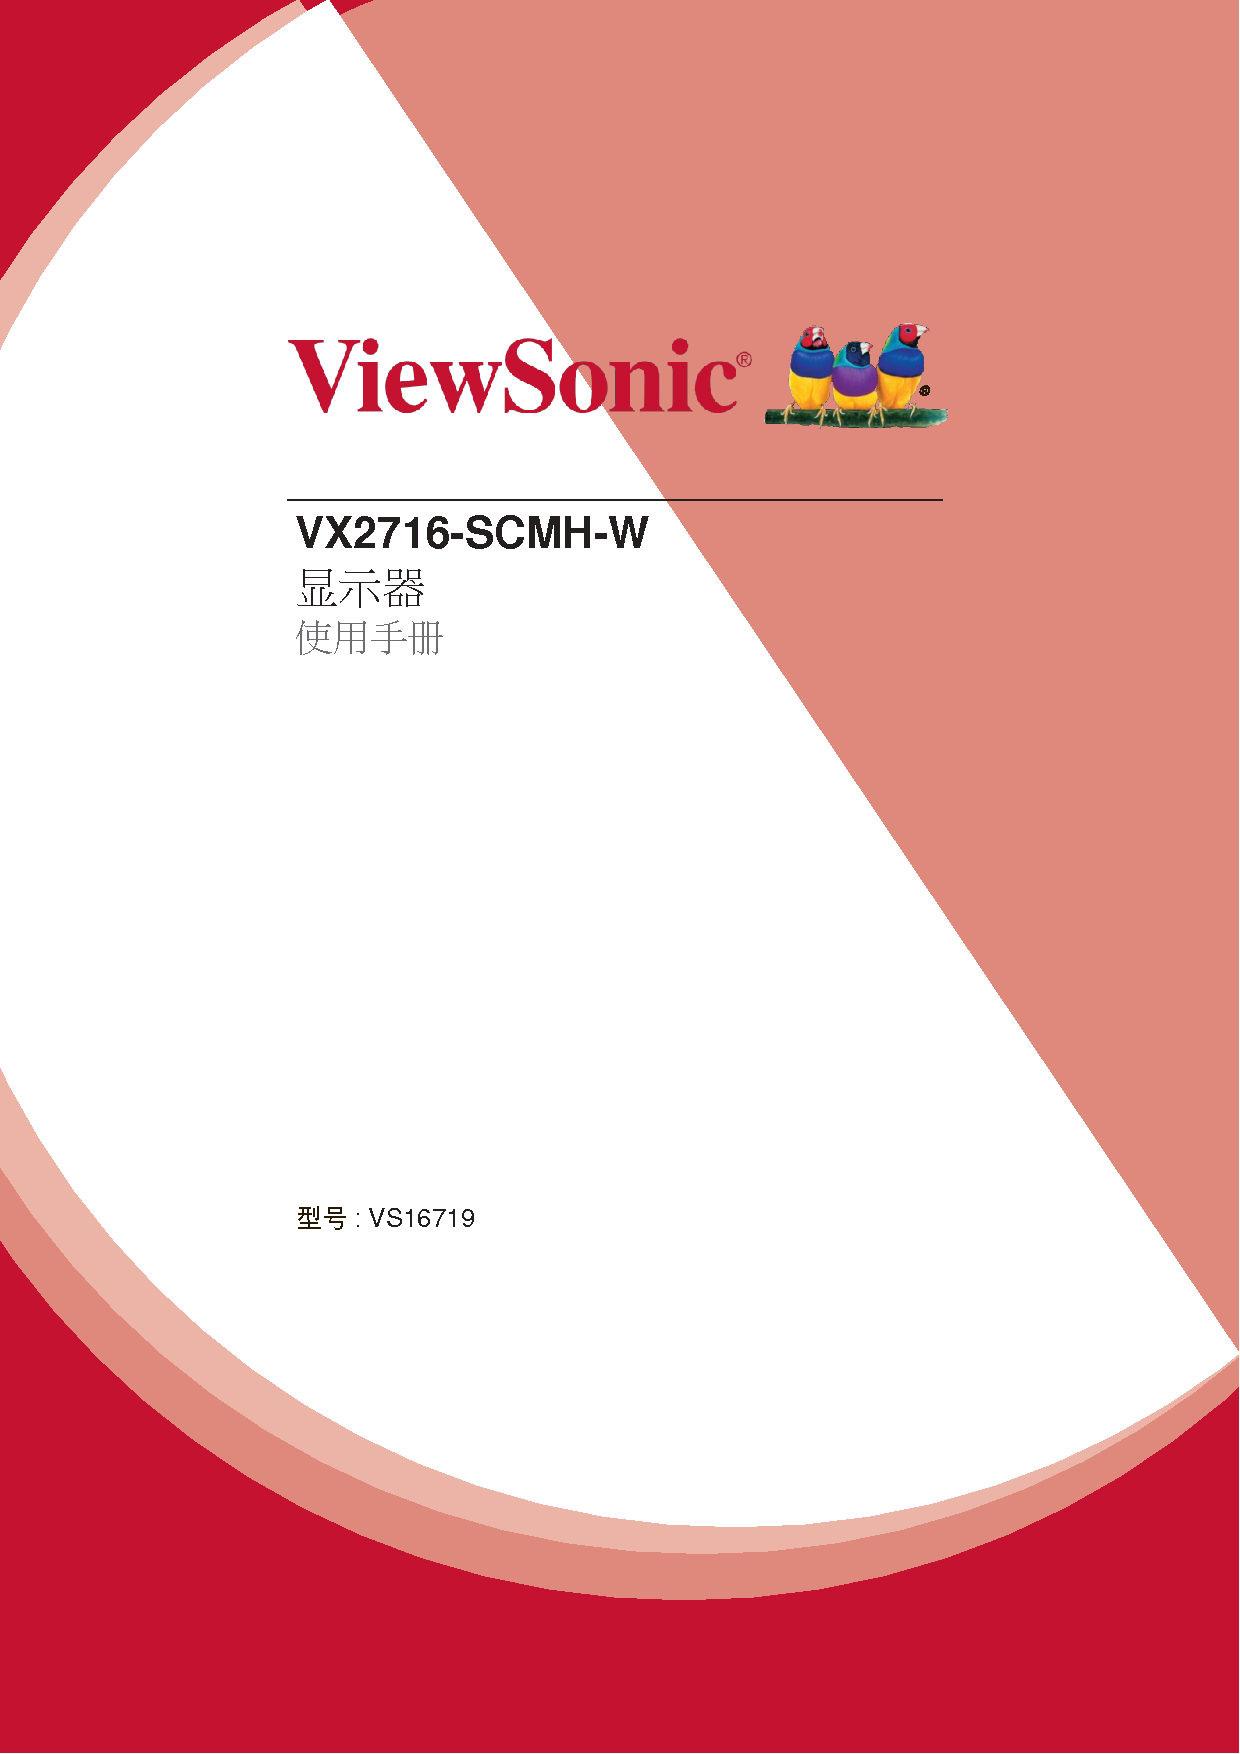 优派 ViewSonic VX2716-SCMH-W 使用手册 封面